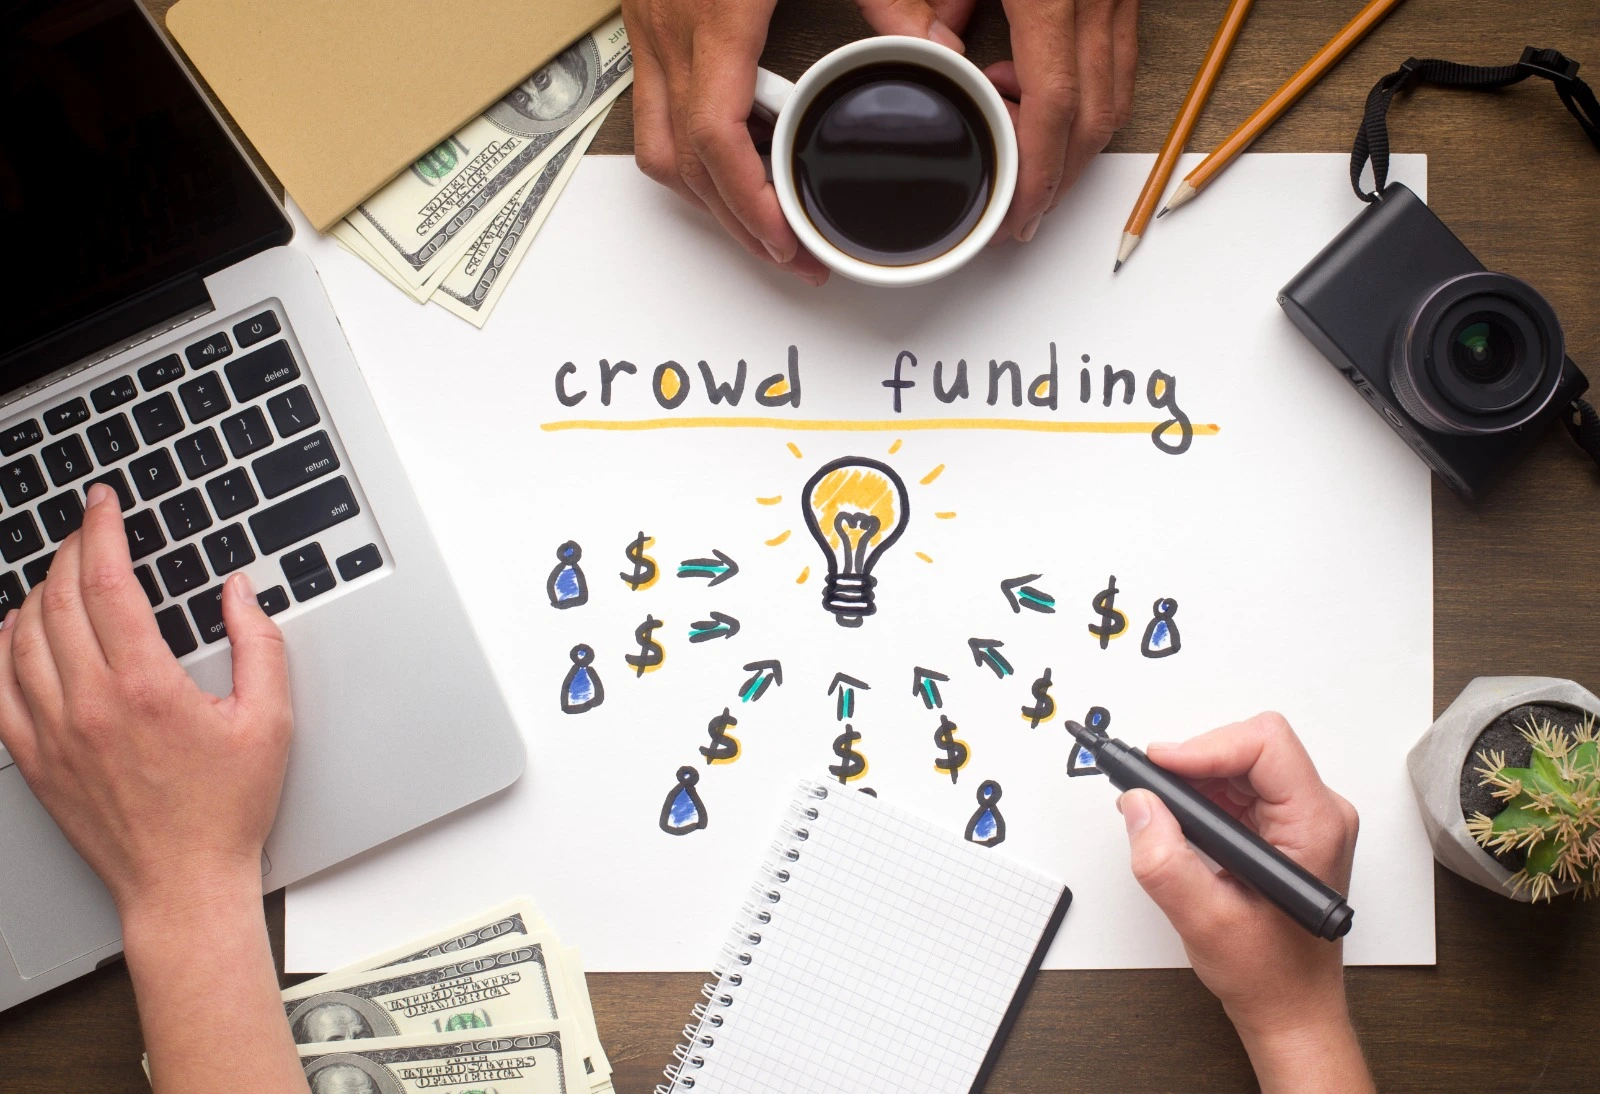 mano dibujando sobre una hoja mostrando la palabra "crowdfunding"